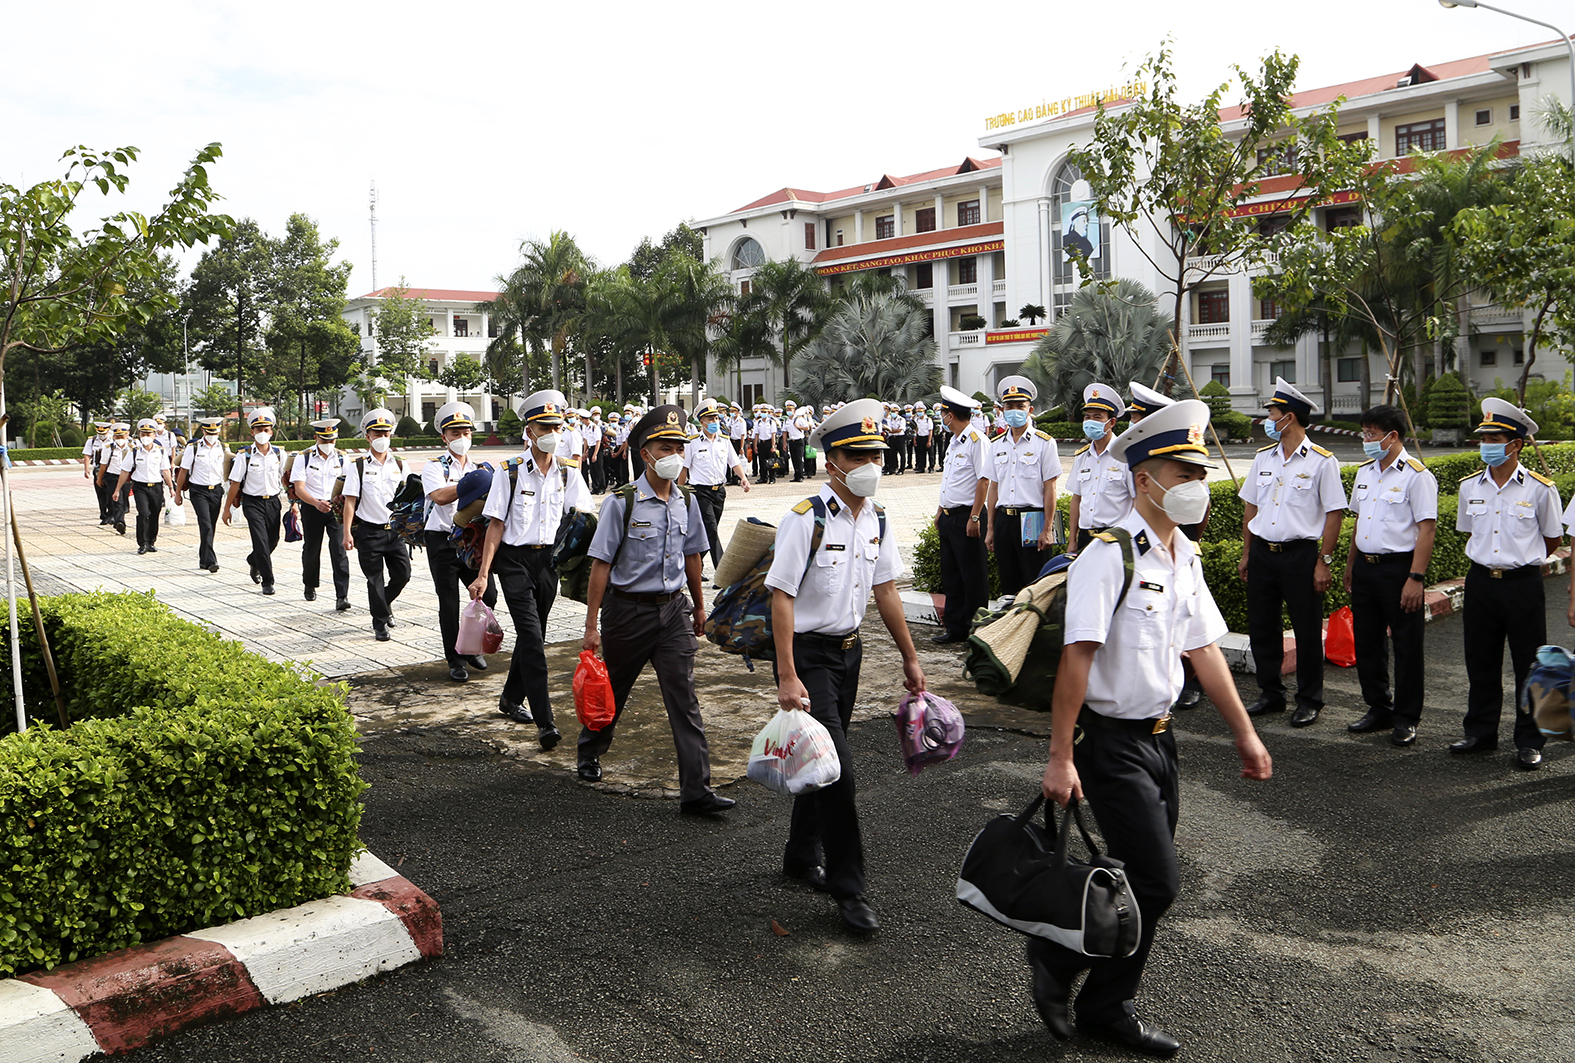 Trường Cao đẳng Kỹ thuật Hải quân: Lần thứ 2 xuất quân chống dịch c... -  Báo Hải Quân Việt Nam